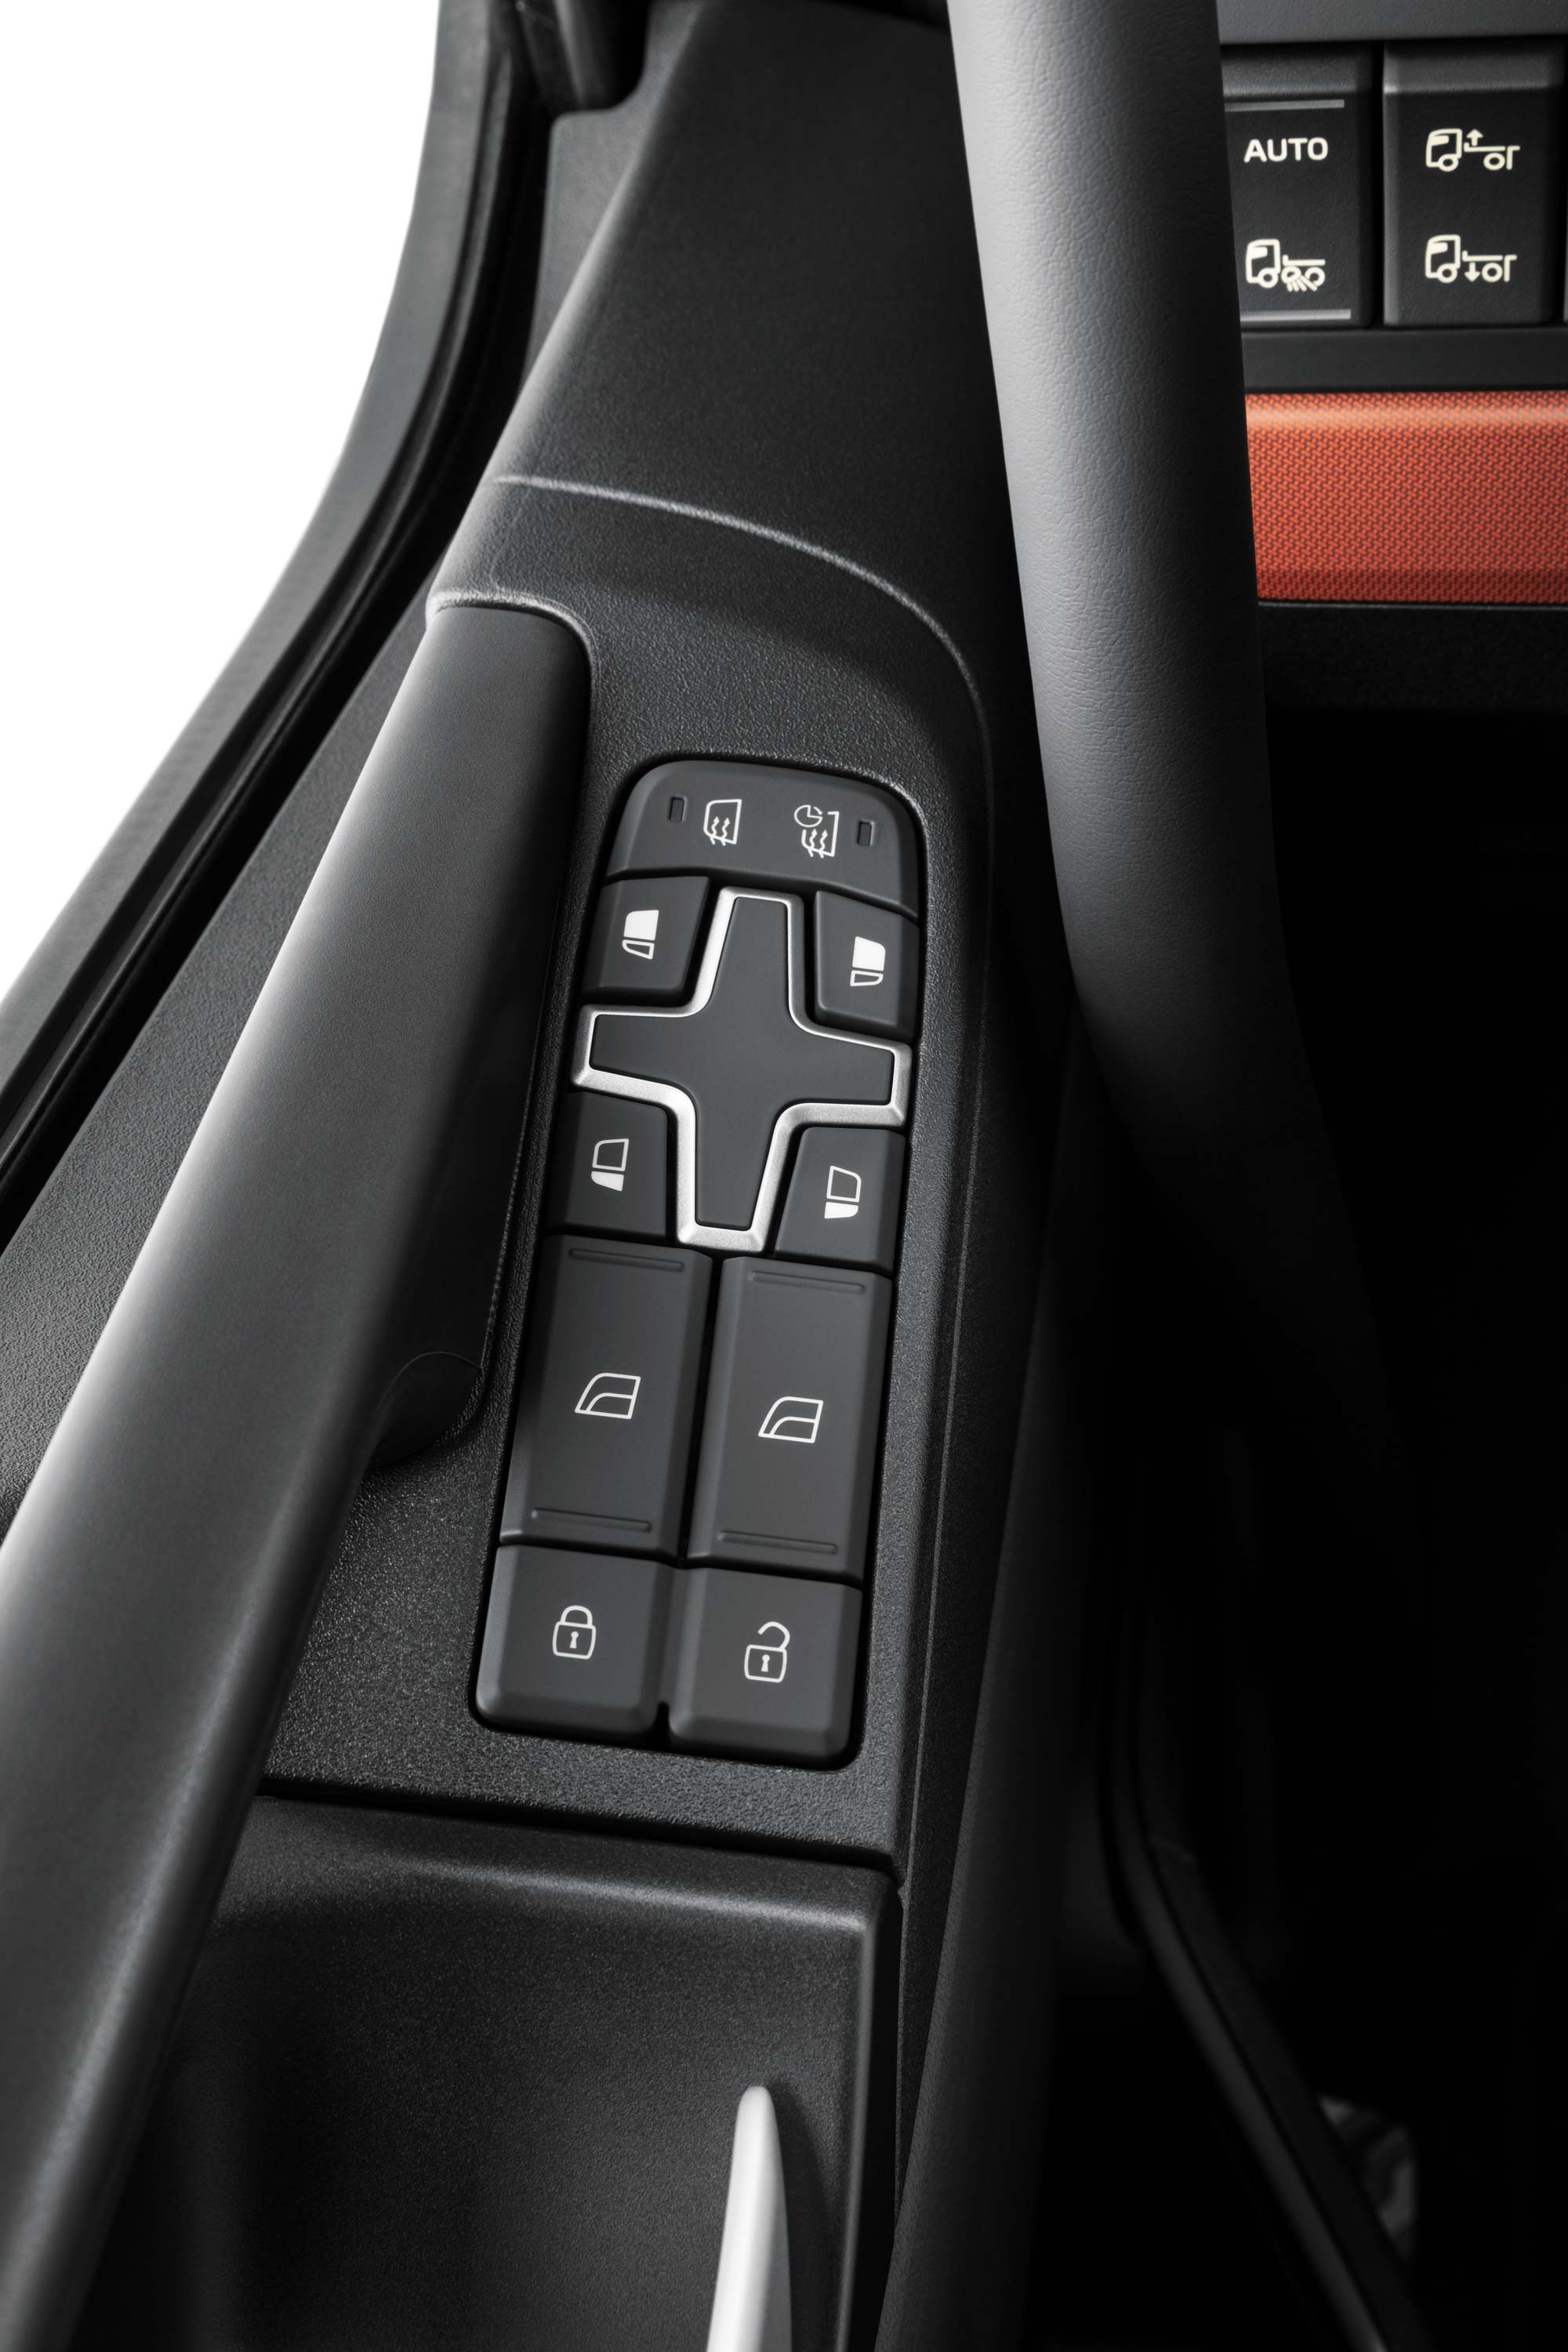 Kontrole integrisane u unutrašnjost kamiona Volvo FH16 radi lakšeg pristupa.